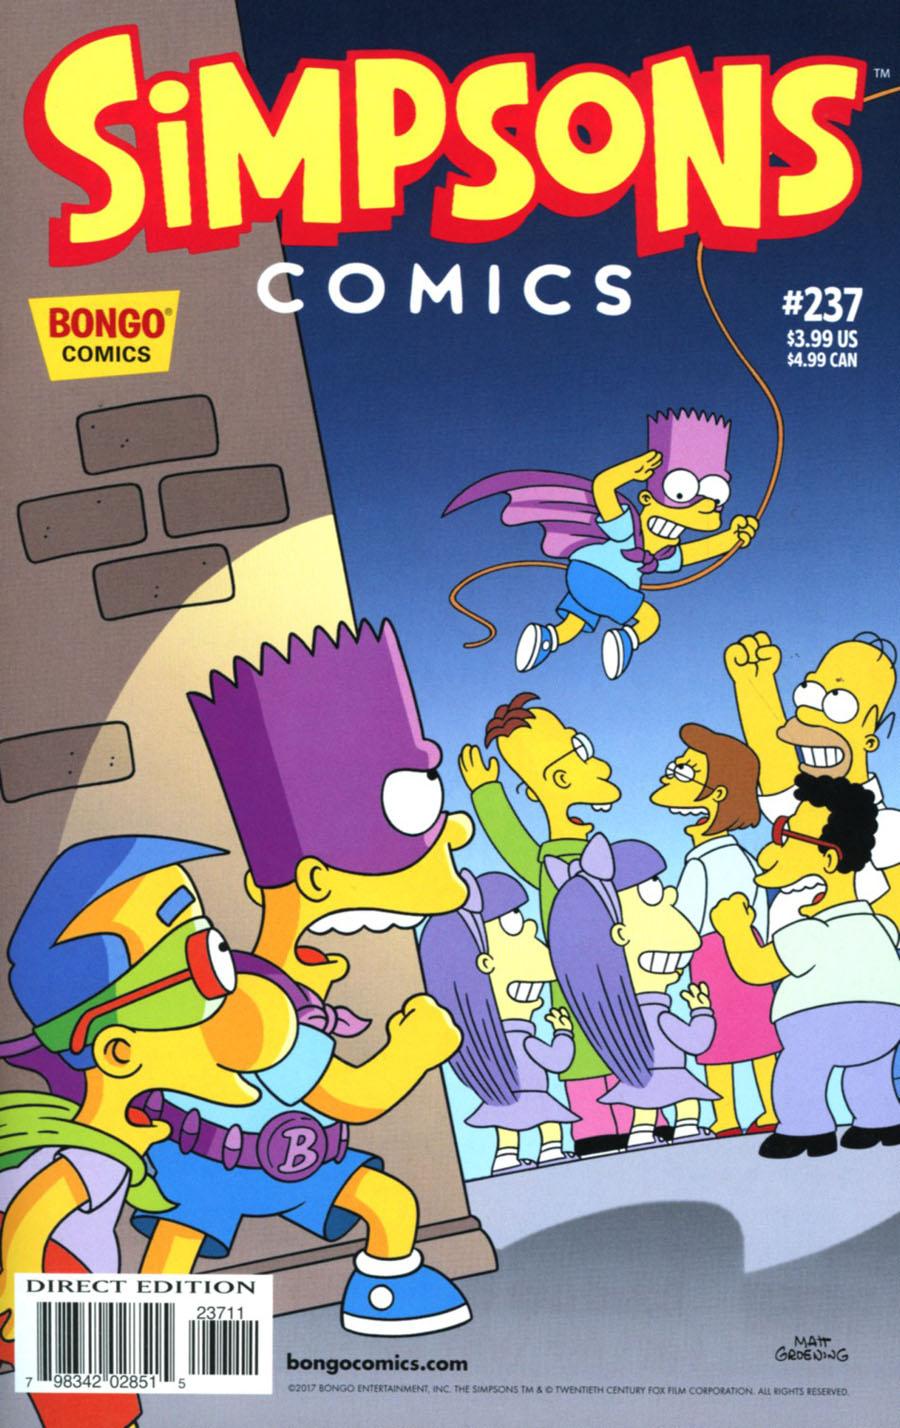 Simpsons Comics Vol. 1 #237